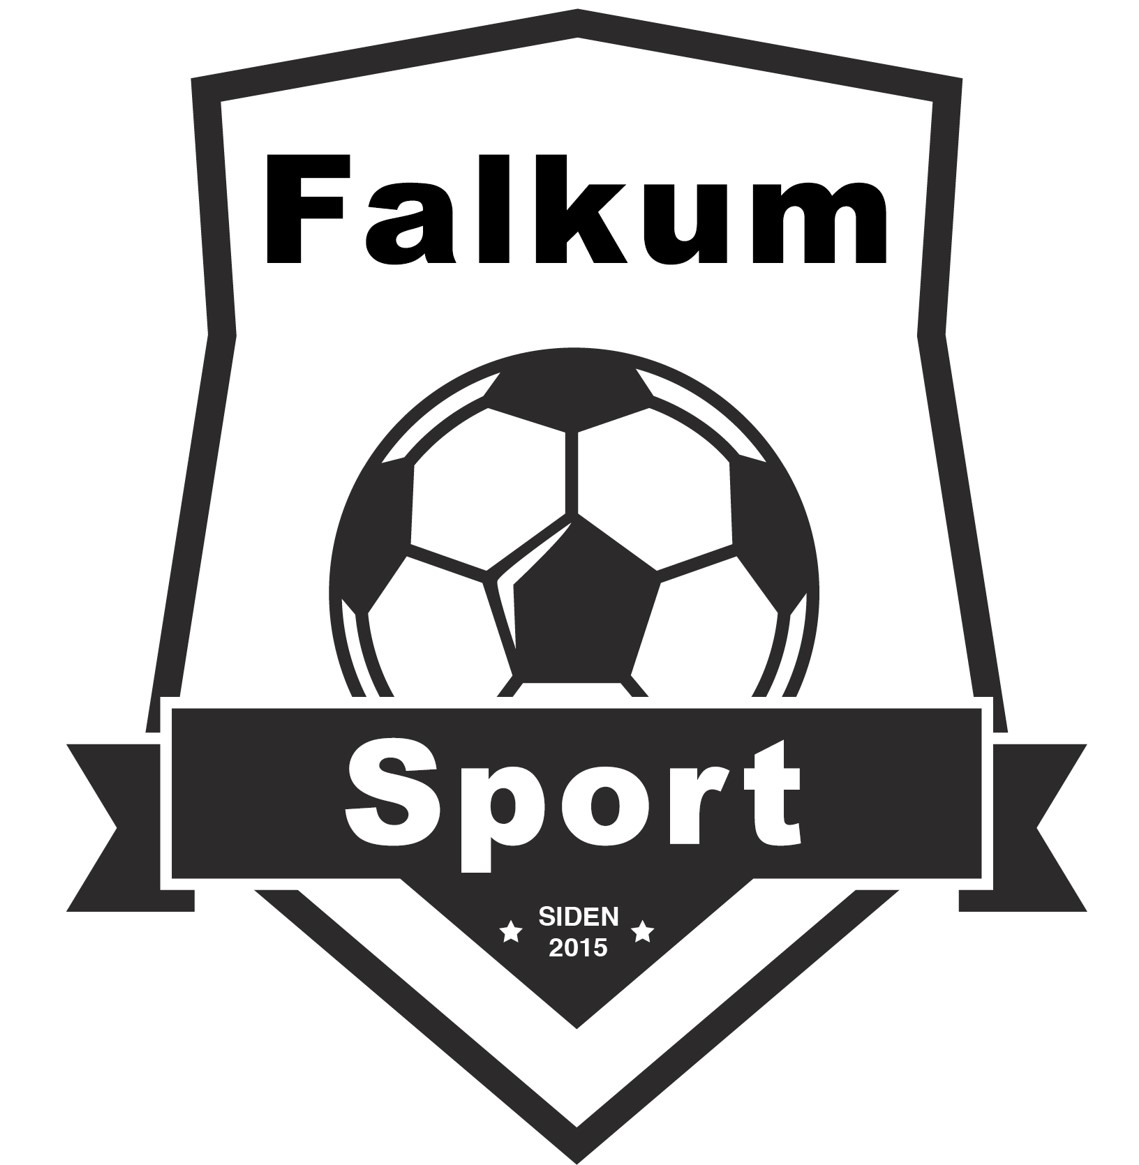 Falkum Sport AS